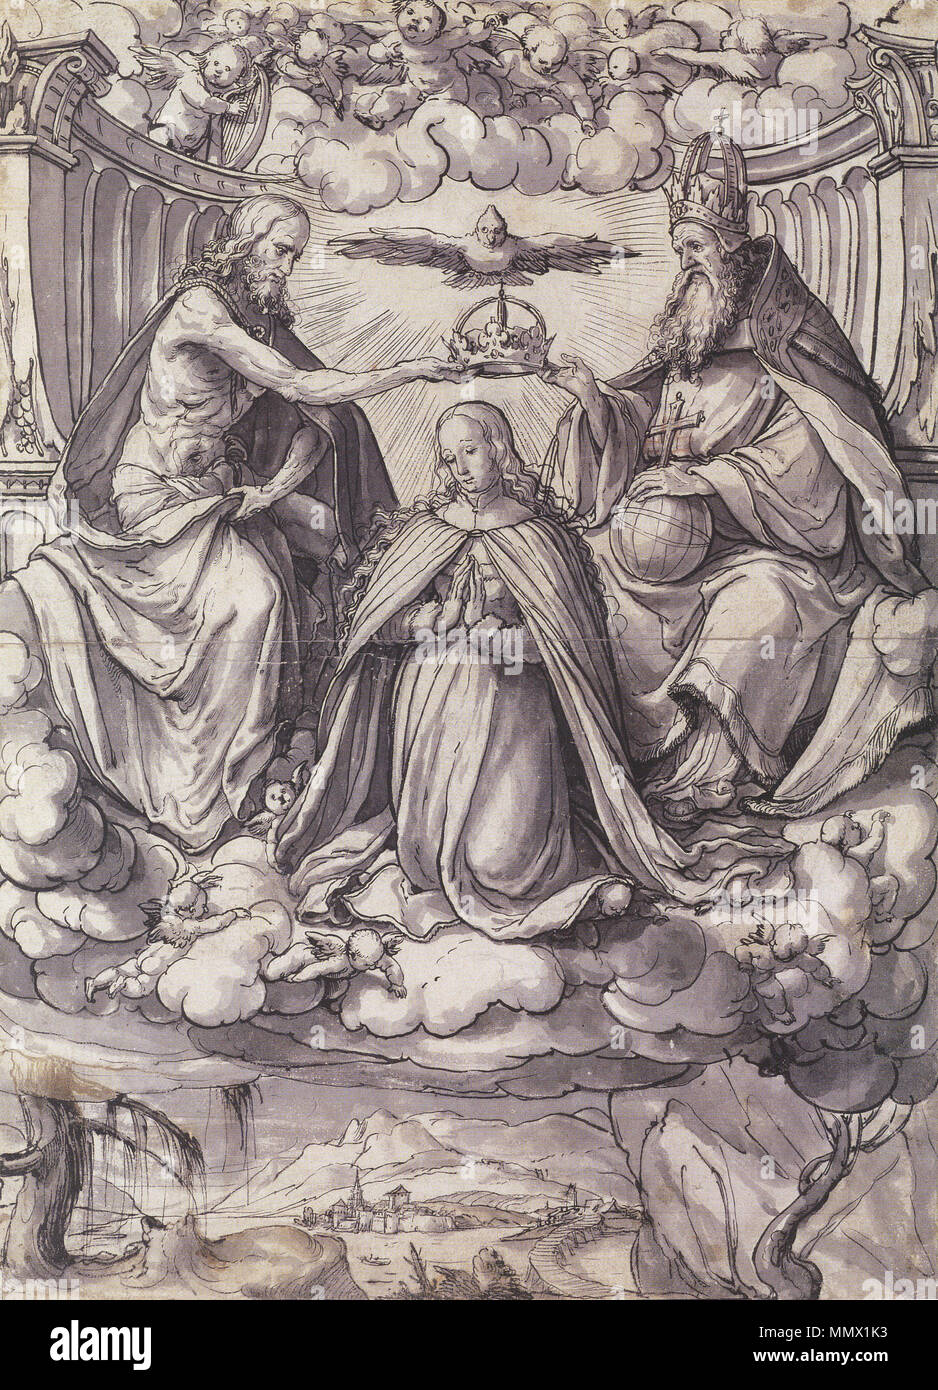 . Anglais : Conception d'un vitrail avec le couronnement de la Vierge. Plume et encre sur avant-dessin à la craie, gris et lavis, craie rouge révision sur la croix du monde, 43,1 × 31,3 cm, Kunstmuseum de Bâle. L'un d'un certain nombre de dessins de vitraux fabriqués par Holbein durant son séjour à Lucerne à partir de 1517 à 1519 vers 1518 .. Hans Holbein (1497/1498-1543) Noms alternatifs Hans Holbein der Jüngere Hans Holbein, peintre et dessinateur allemand Description Date de naissance/décès 1497 ou 1498 entre 7 octobre 1543 et 29 novembre 1543 Lieu de naissance/décès L'Augsbourg Banque D'Images